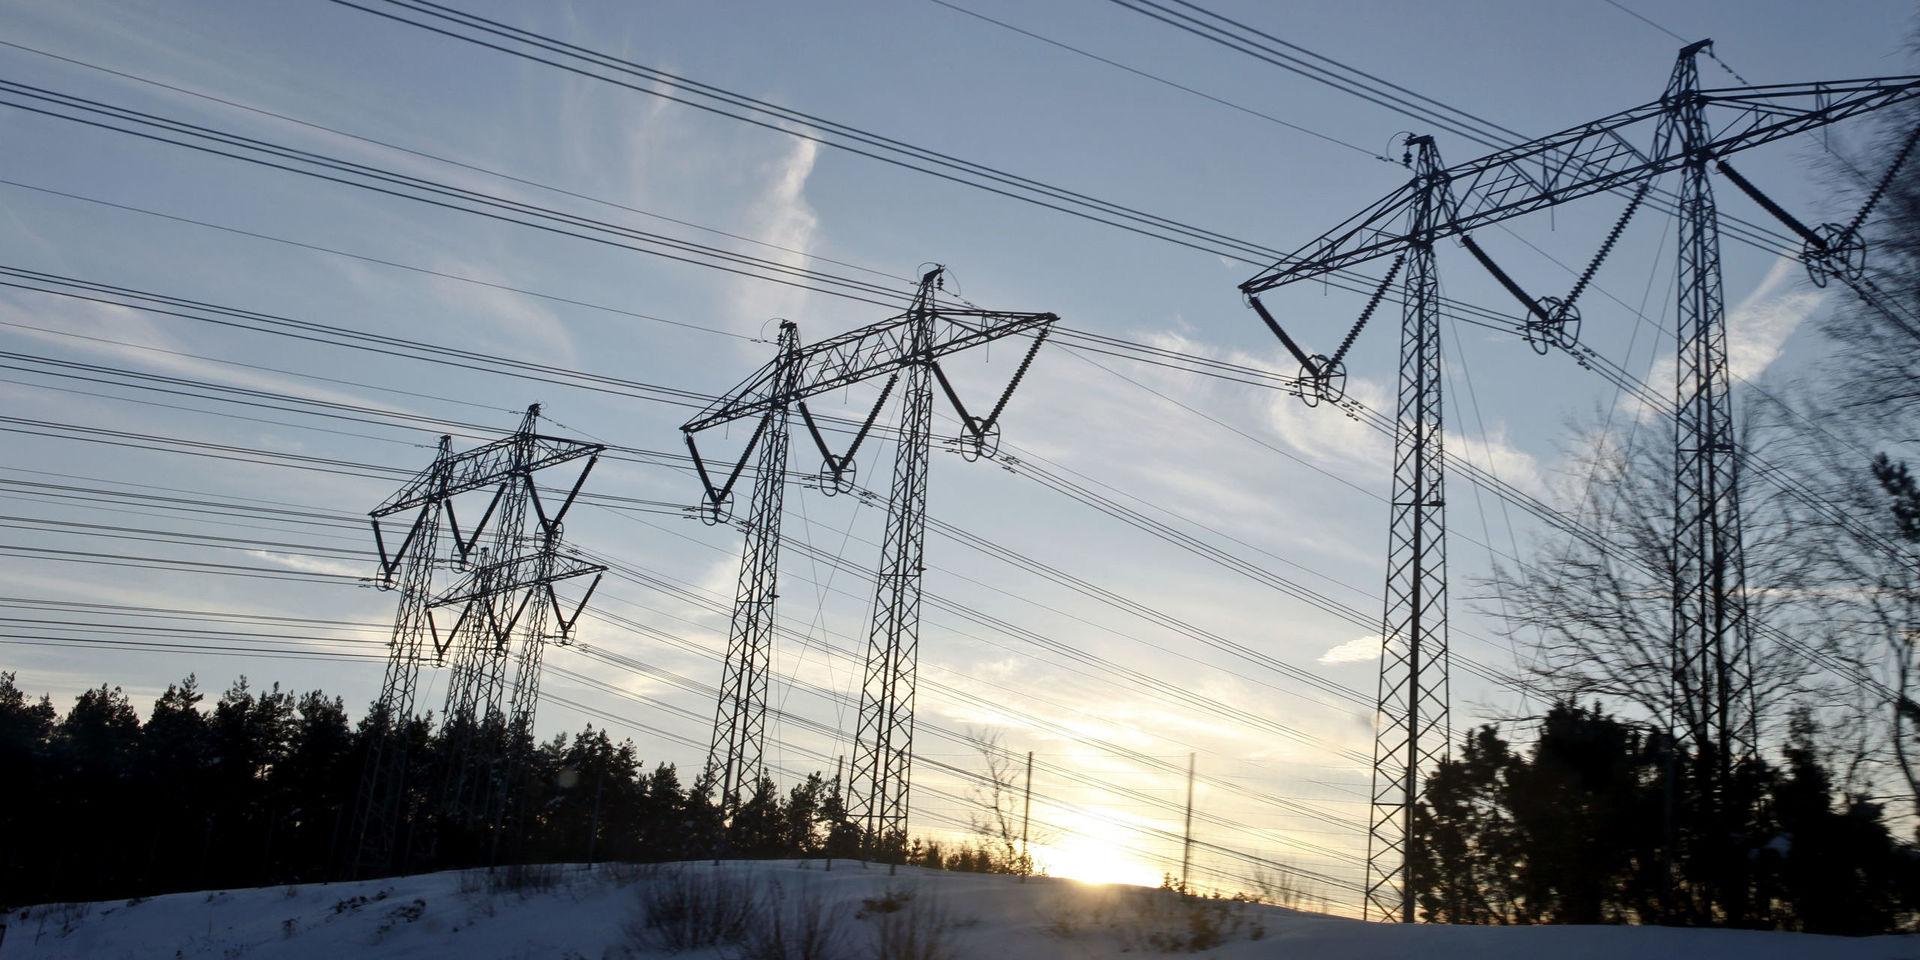 Det finns planer för att bygga ut elnäten i Sverige för 45 miljarder kronor. Men tillstånden tar ofta lång tid. Markägare gillar inte kraftledningar på ägorna.